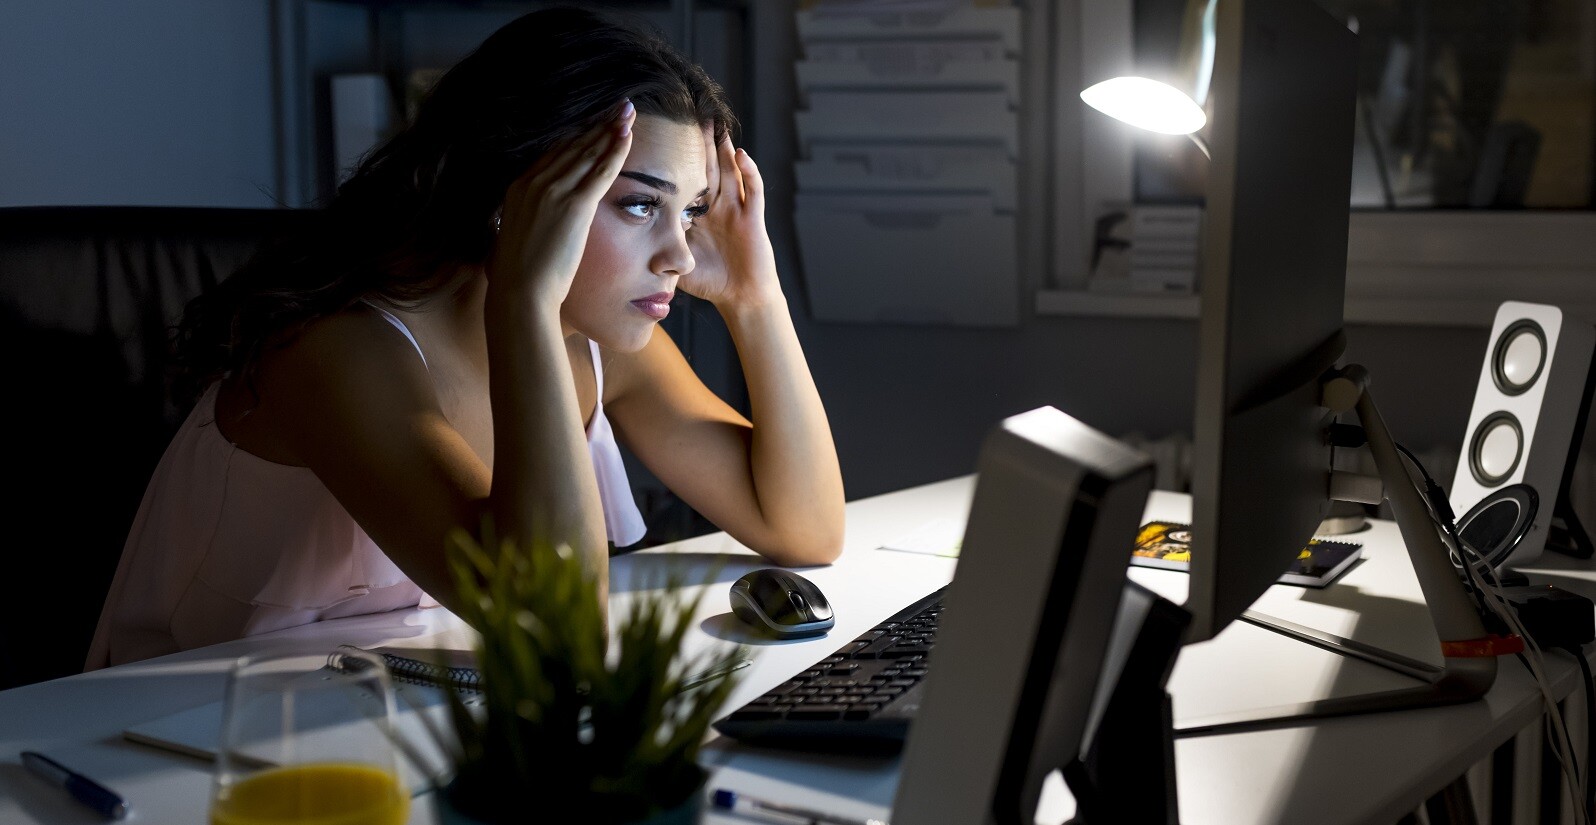 rotina do home office: mulher no home, no período da noite, demonstrando preocupação